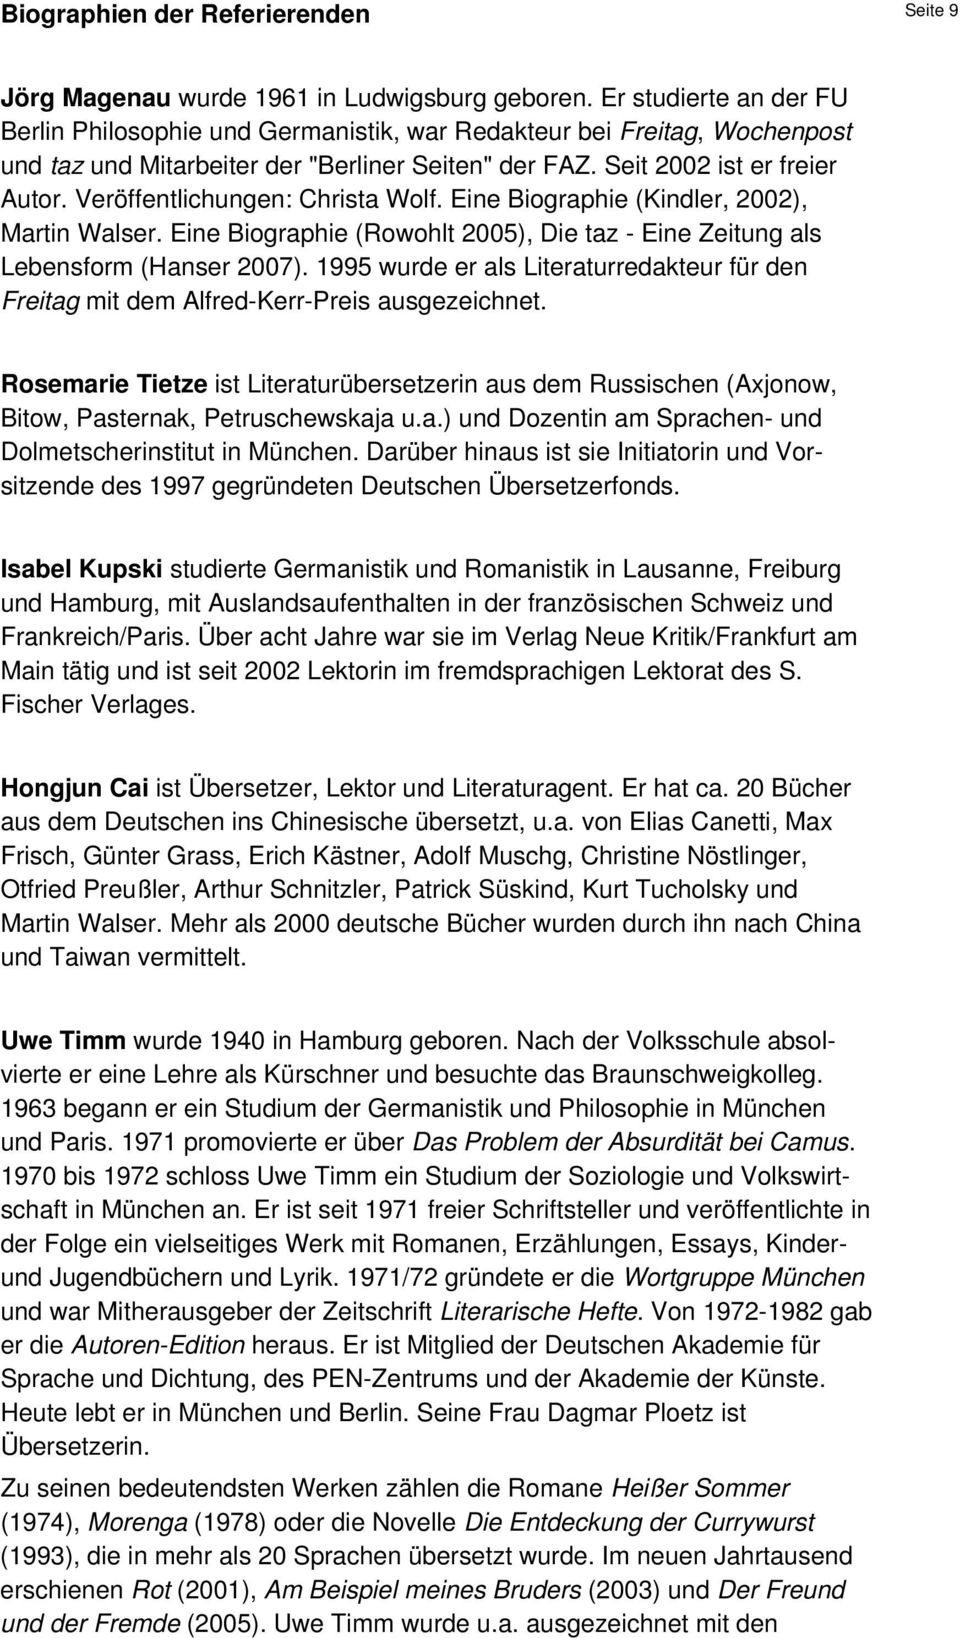 Veröffentlichungen: Christa Wolf. Eine Biographie (Kindler, 2002), Martin Walser. Eine Biographie (Rowohlt 2005), Die taz - Eine Zeitung als Lebensform (Hanser 2007).